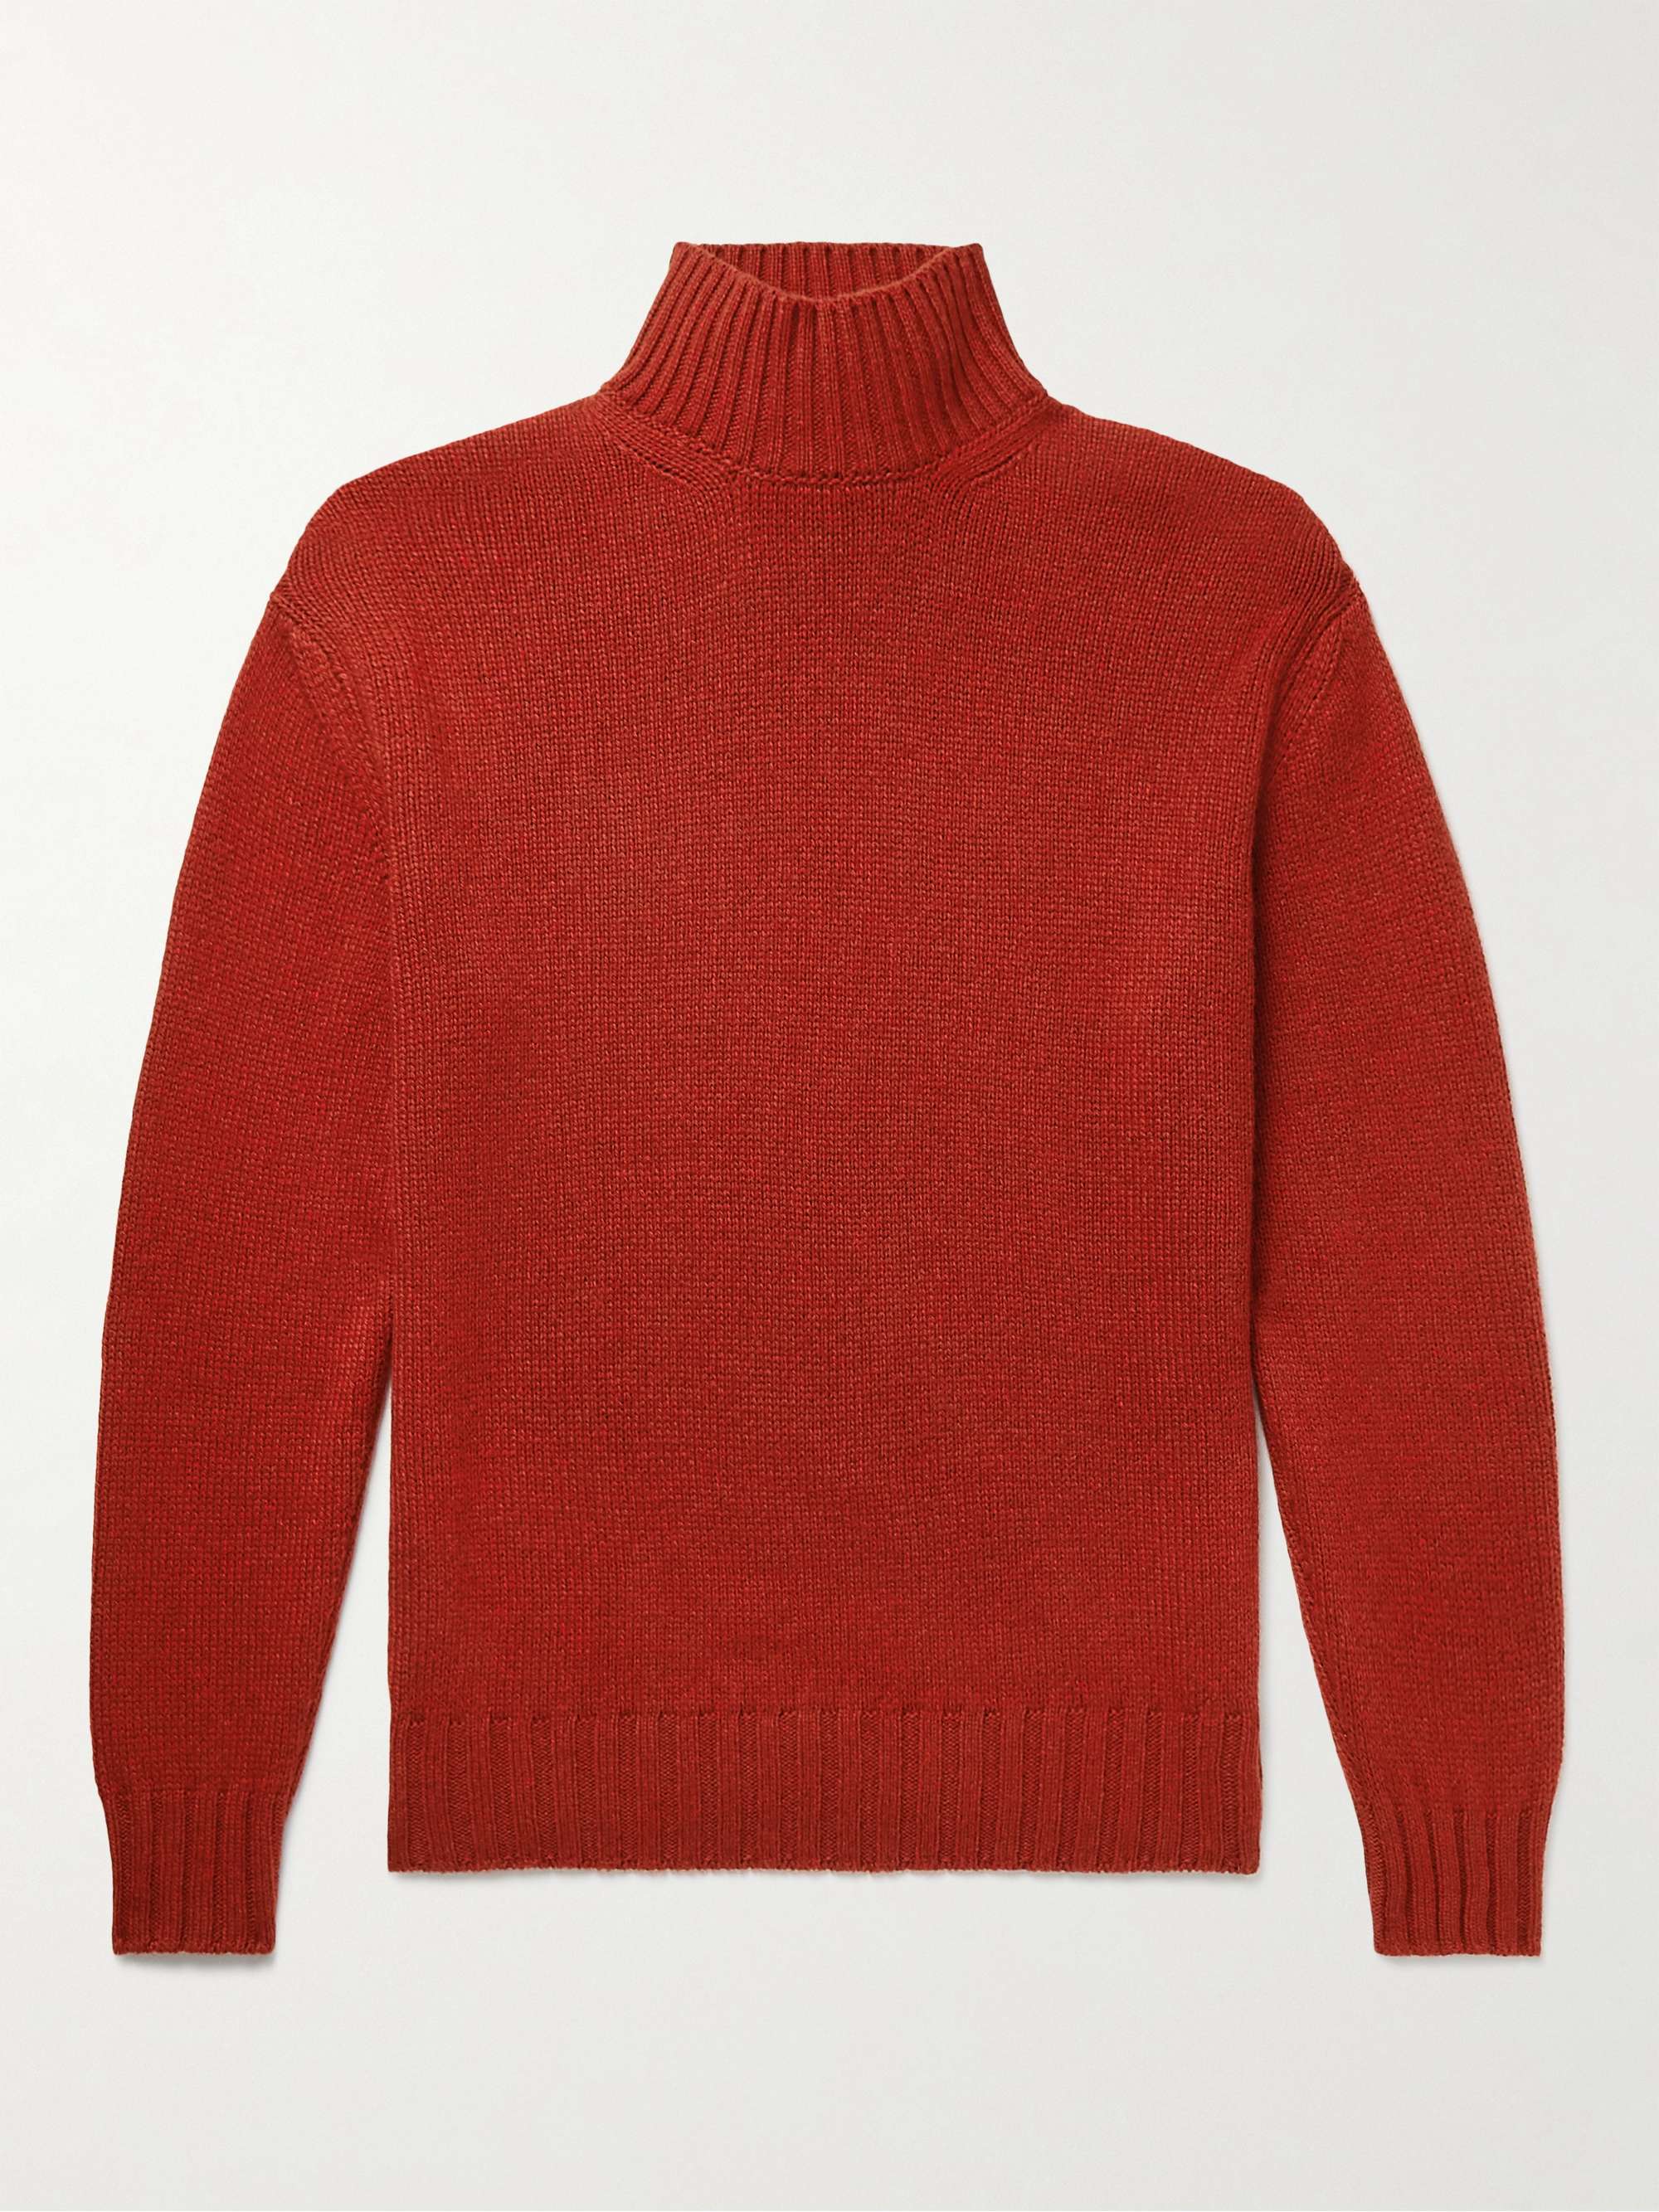 LORO PIANA Cashmere Mock-Neck Sweater for Men | MR PORTER